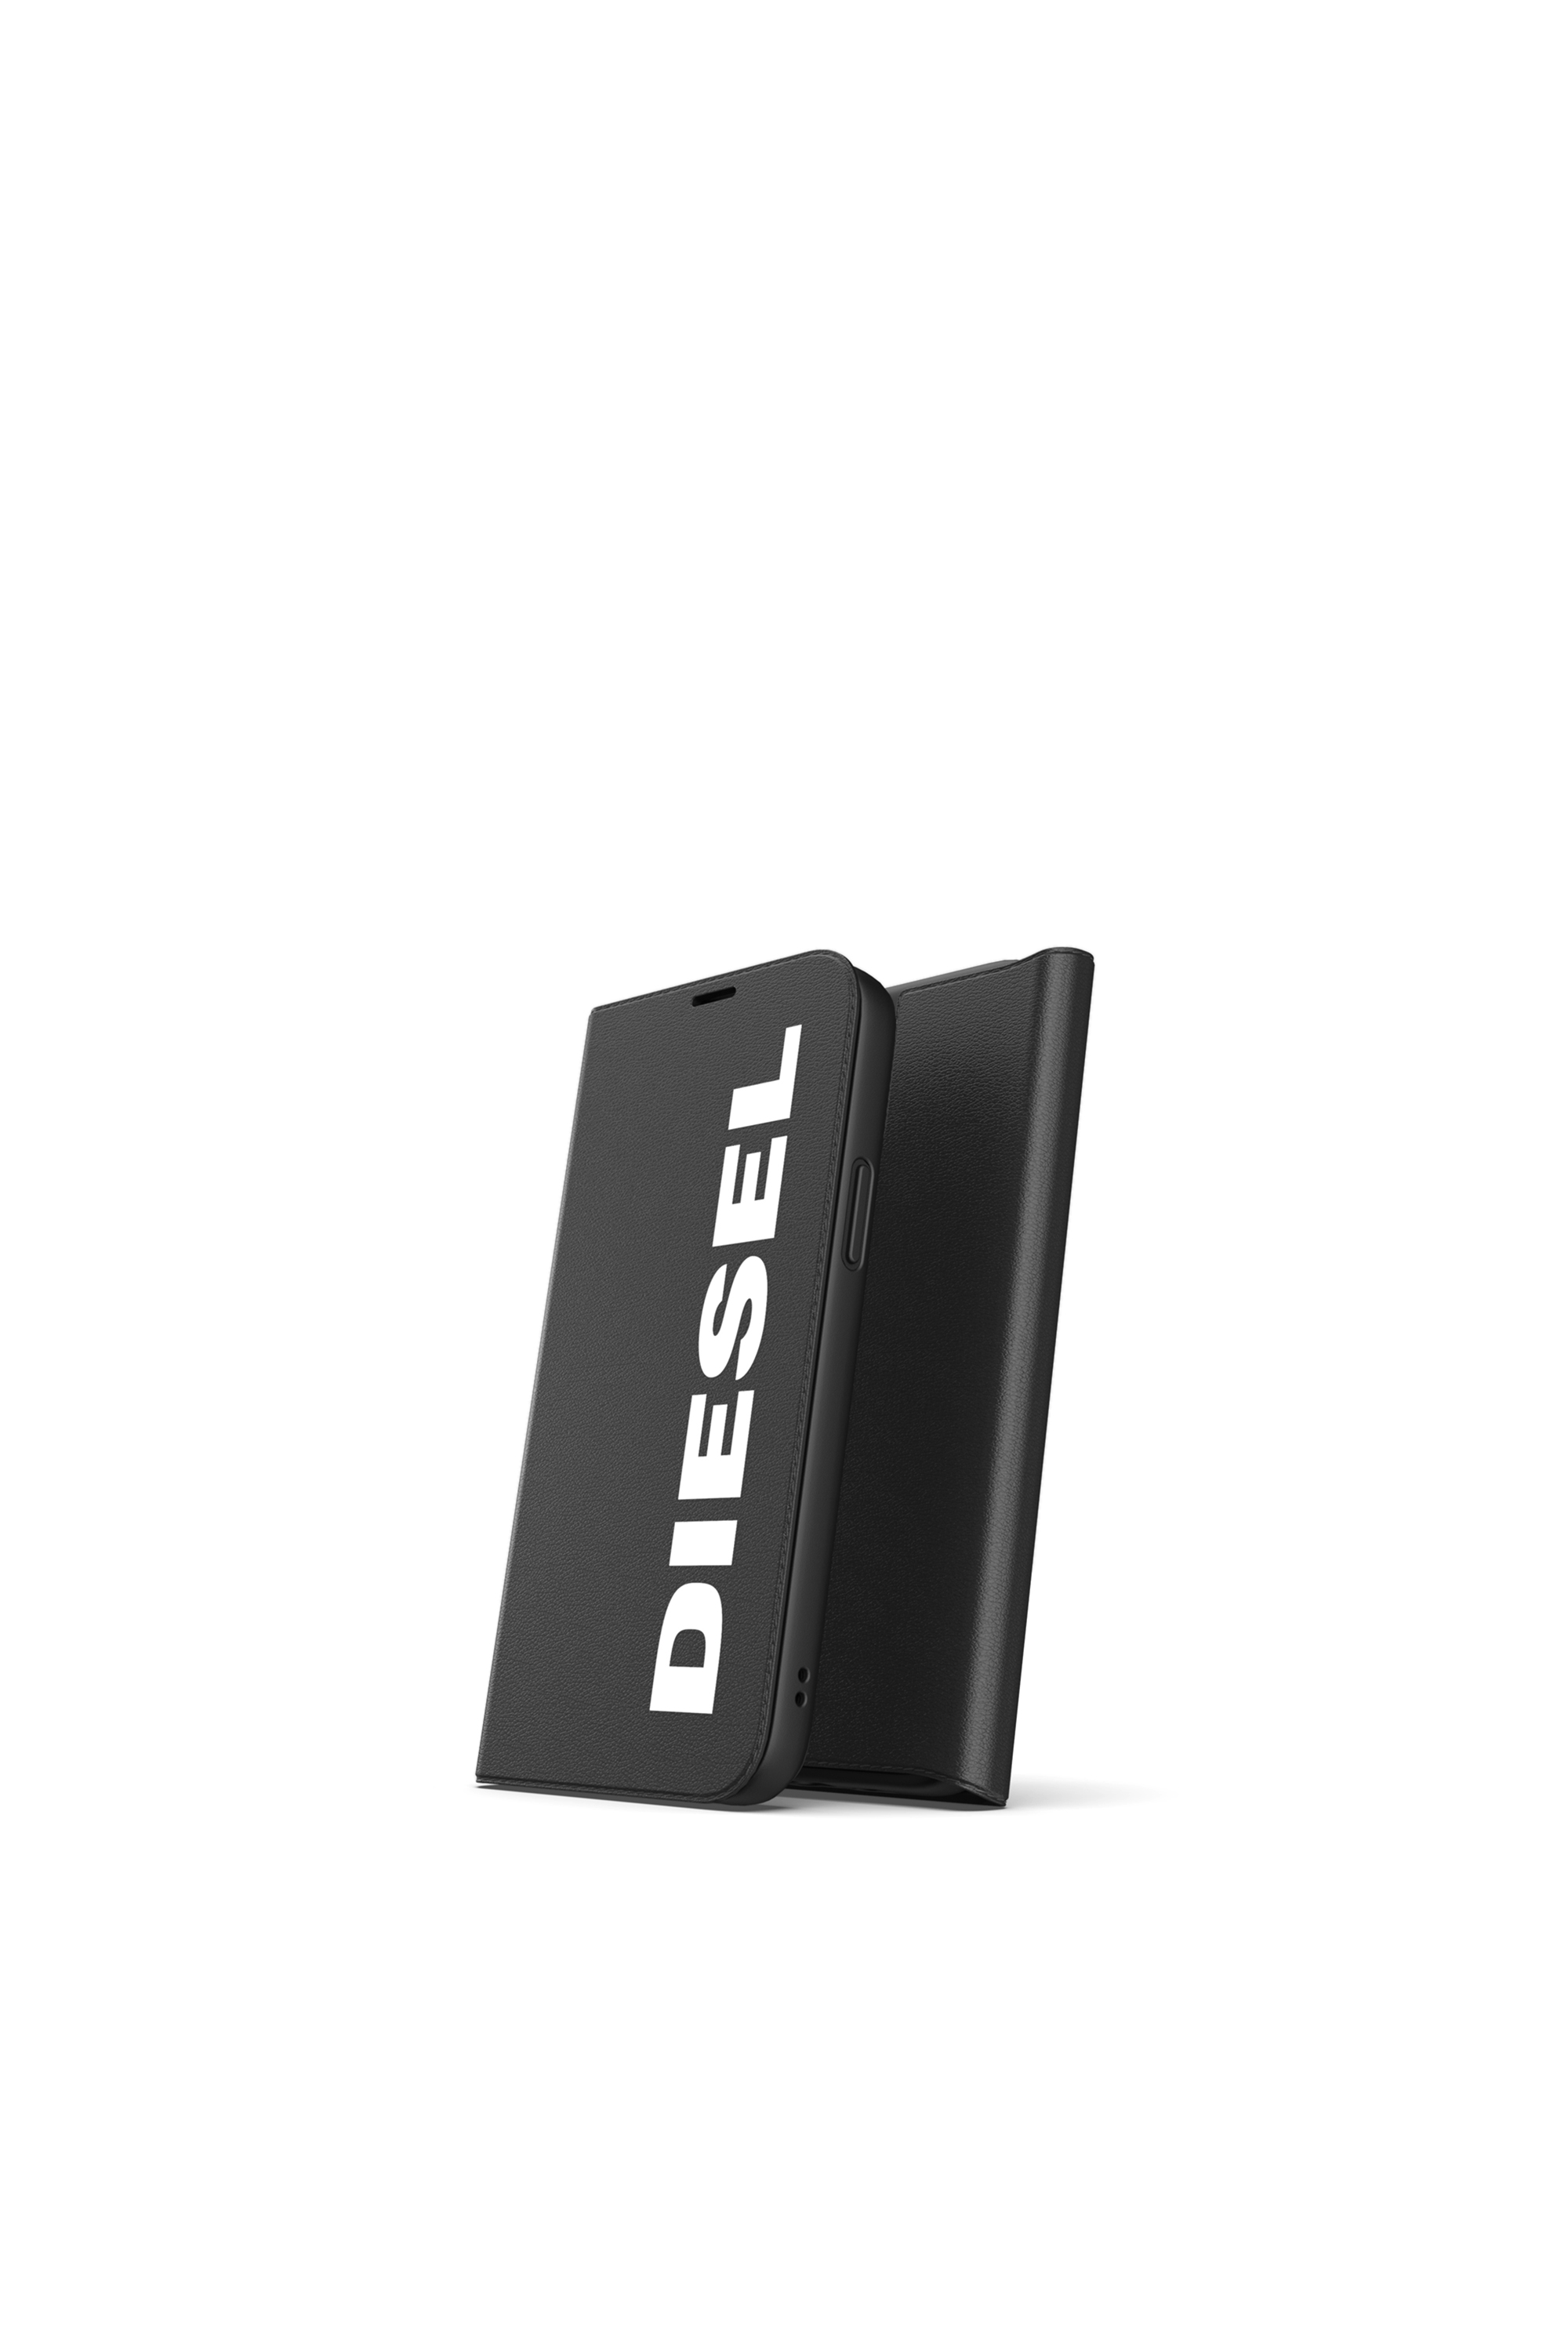 Diesel - 42486, Black - Image 3